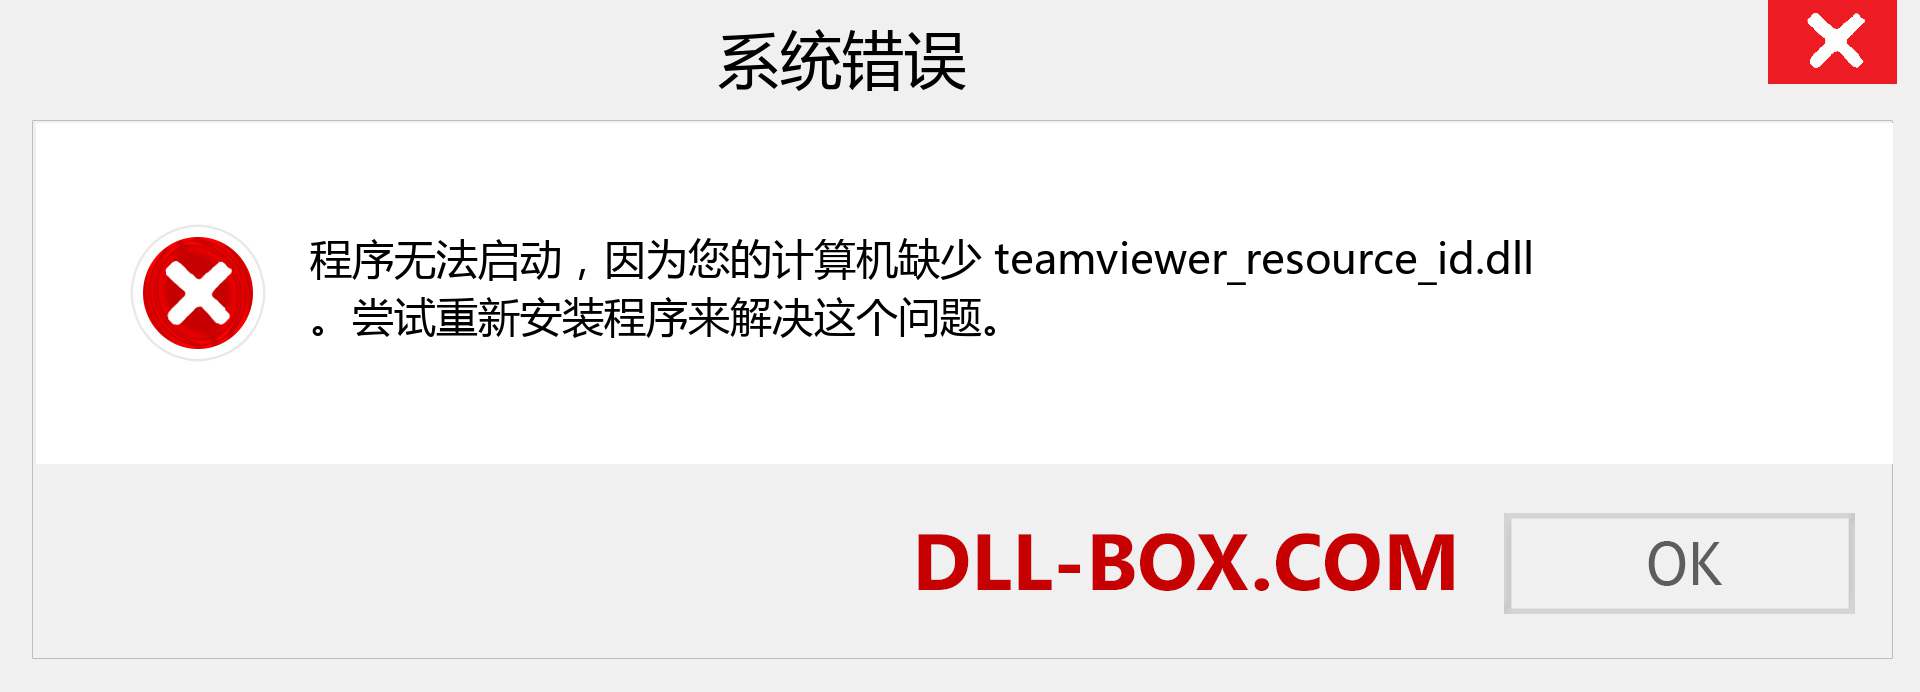 teamviewer_resource_id.dll 文件丢失？。 适用于 Windows 7、8、10 的下载 - 修复 Windows、照片、图像上的 teamviewer_resource_id dll 丢失错误